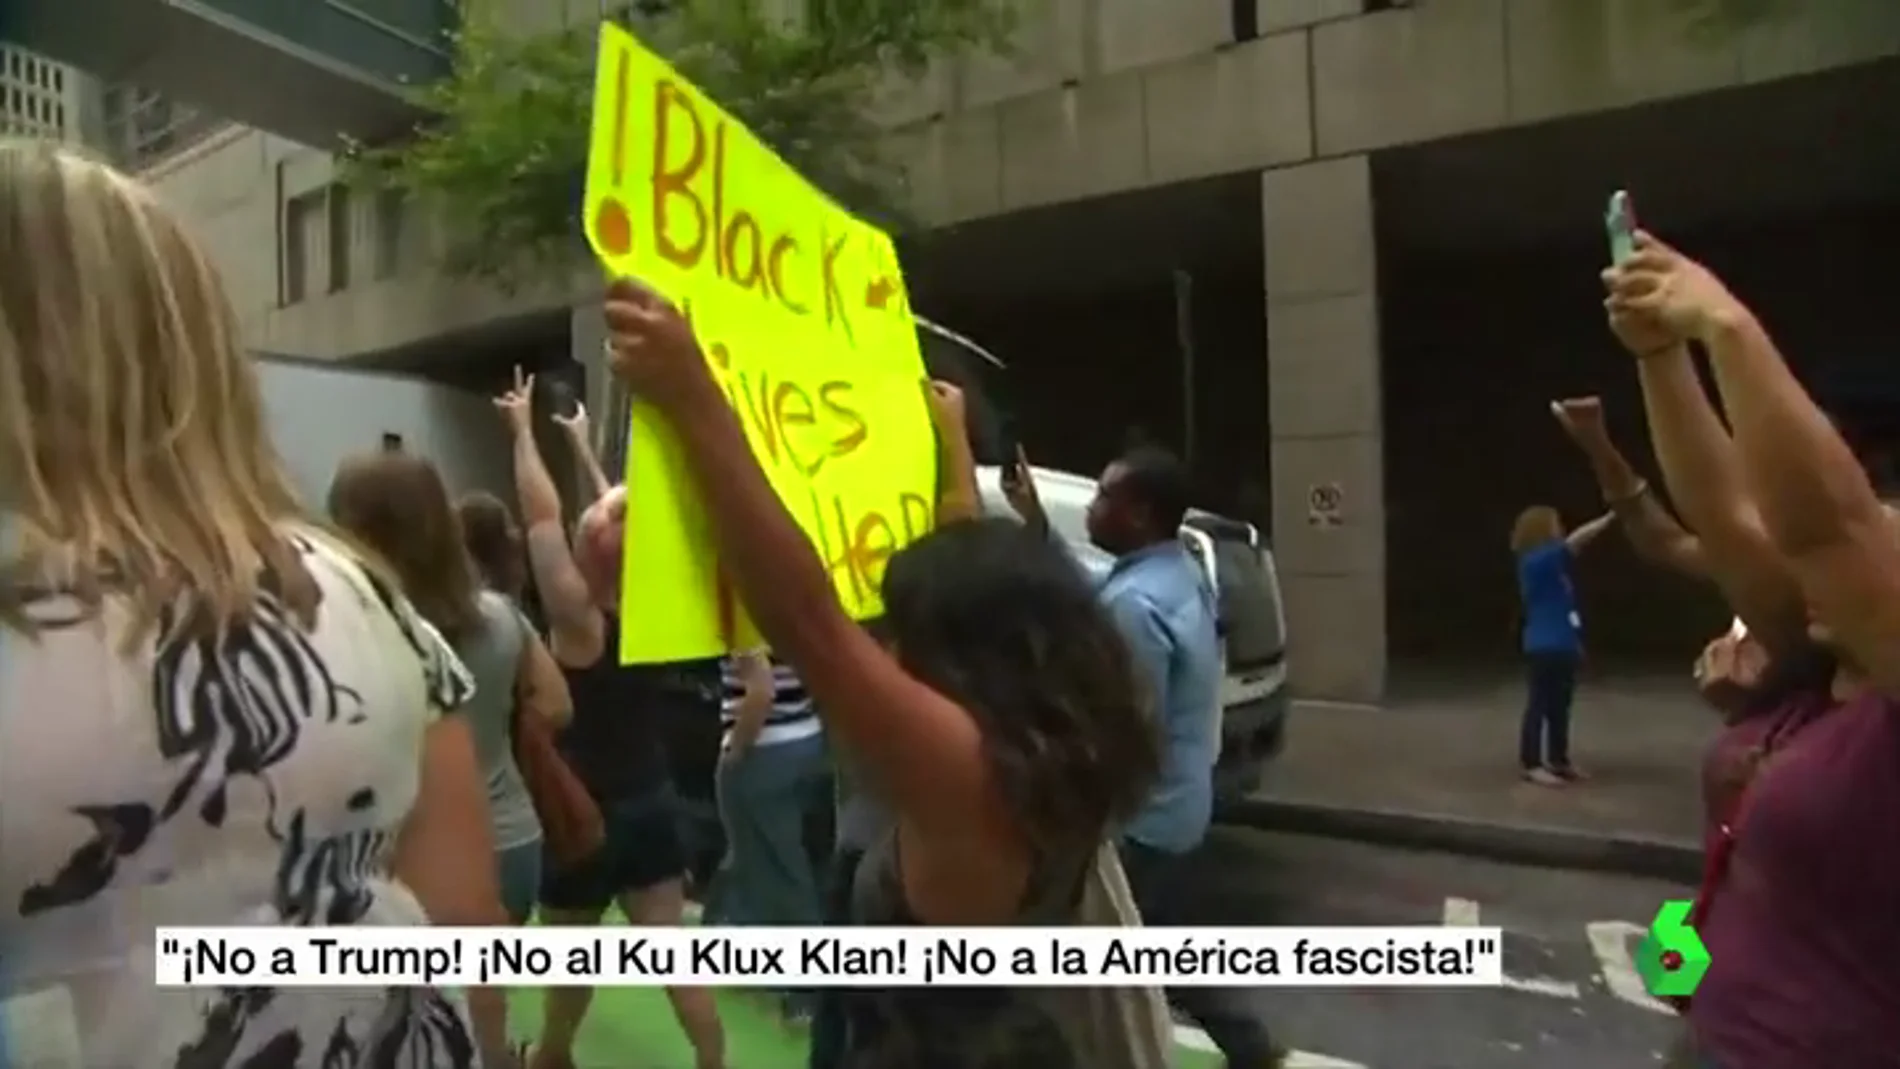 Se manifiestan Cientos de personas en todo EE.UU. contra los supremacistas blancos: "¡No a la América fascista!"